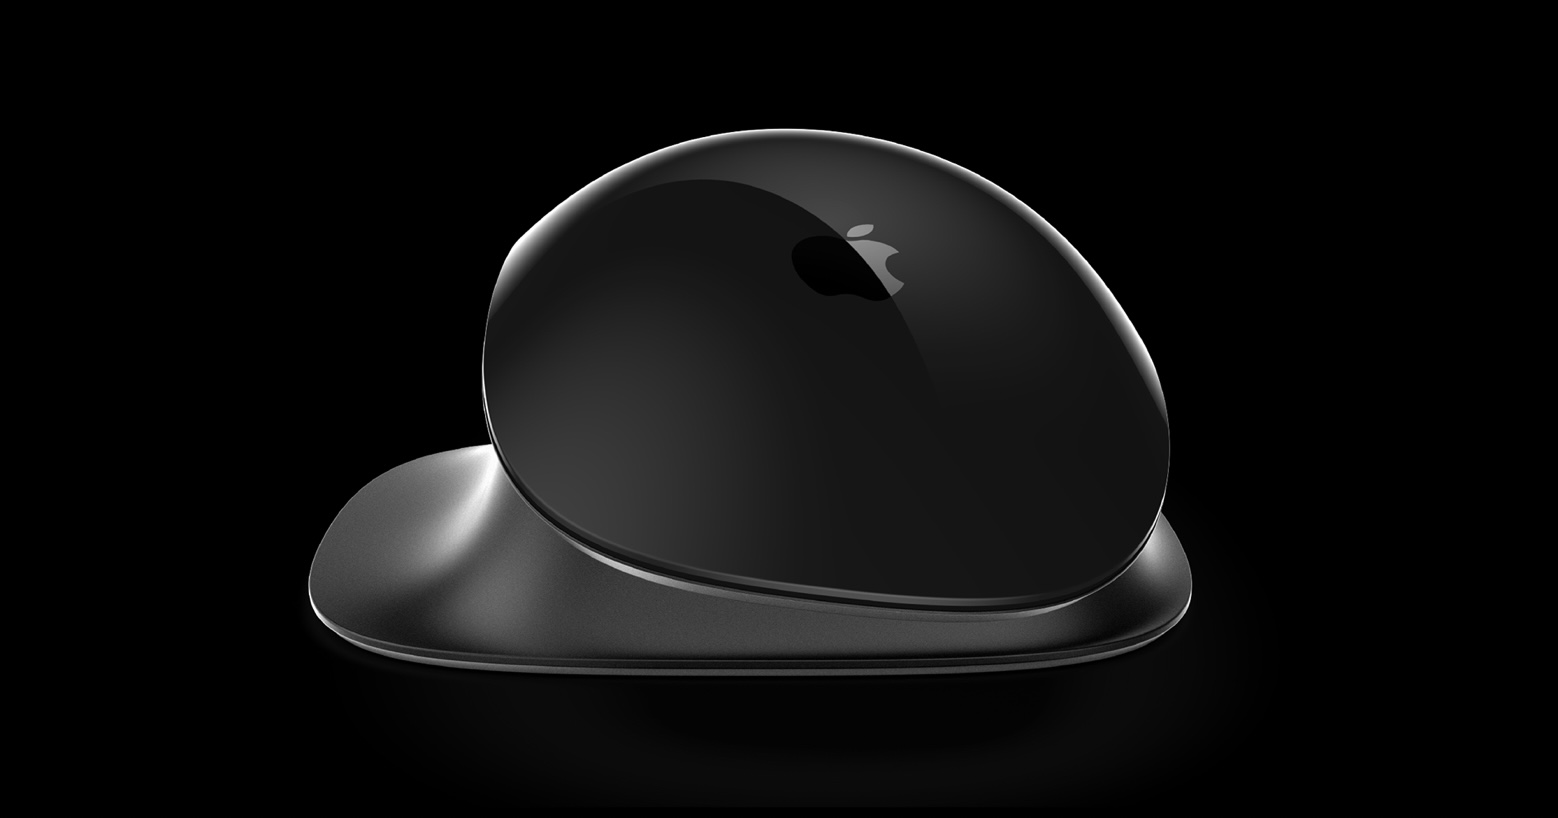 Apple Pro Mouse concept lead